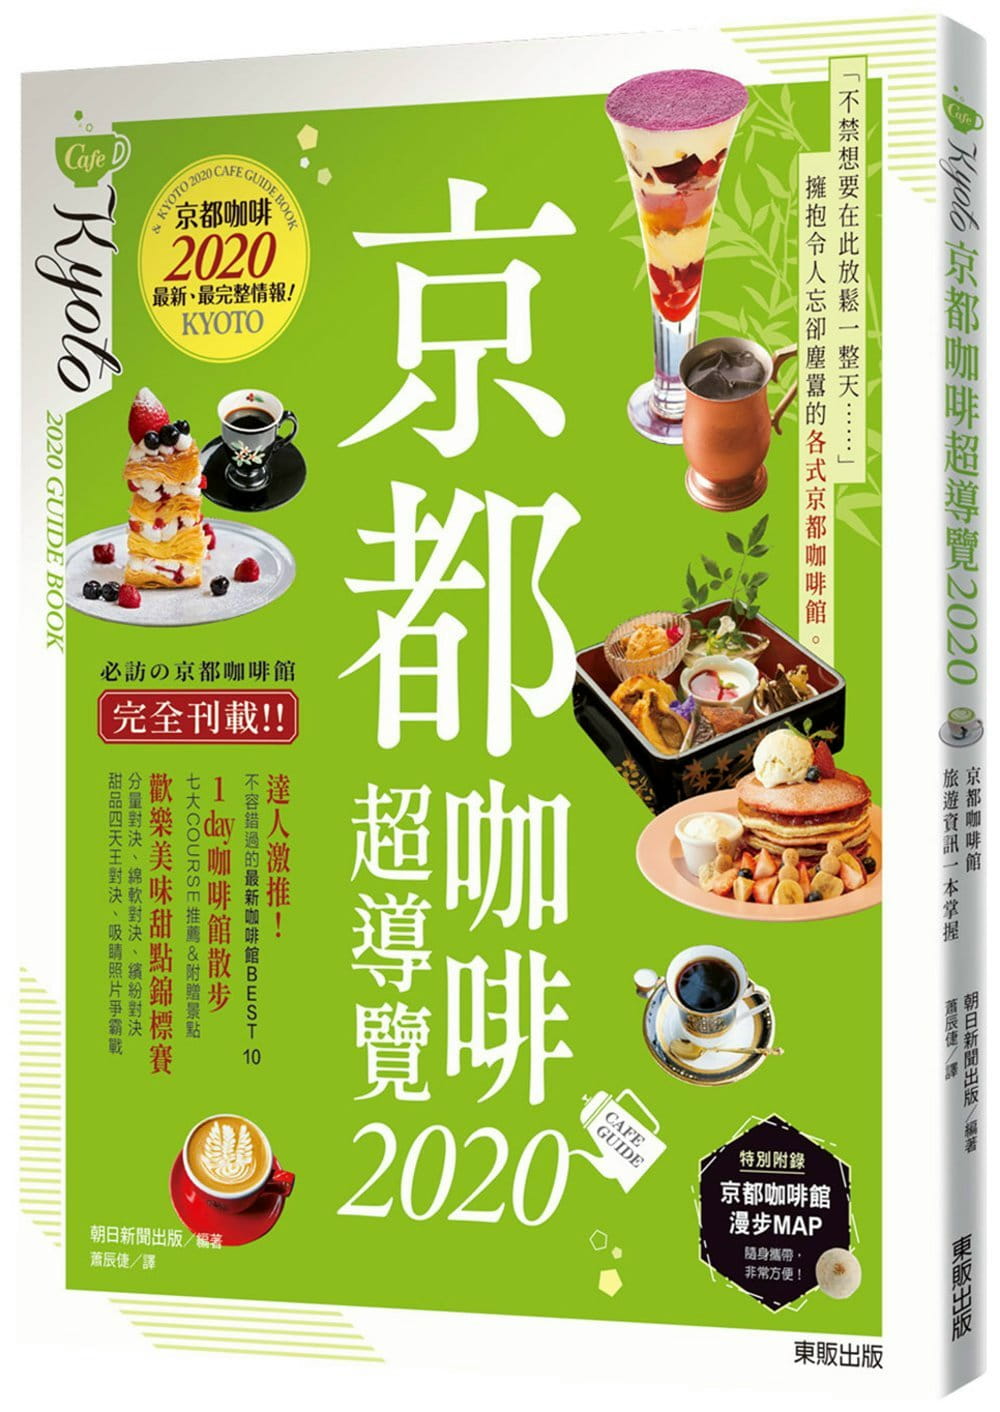 京都咖啡超導覽2020